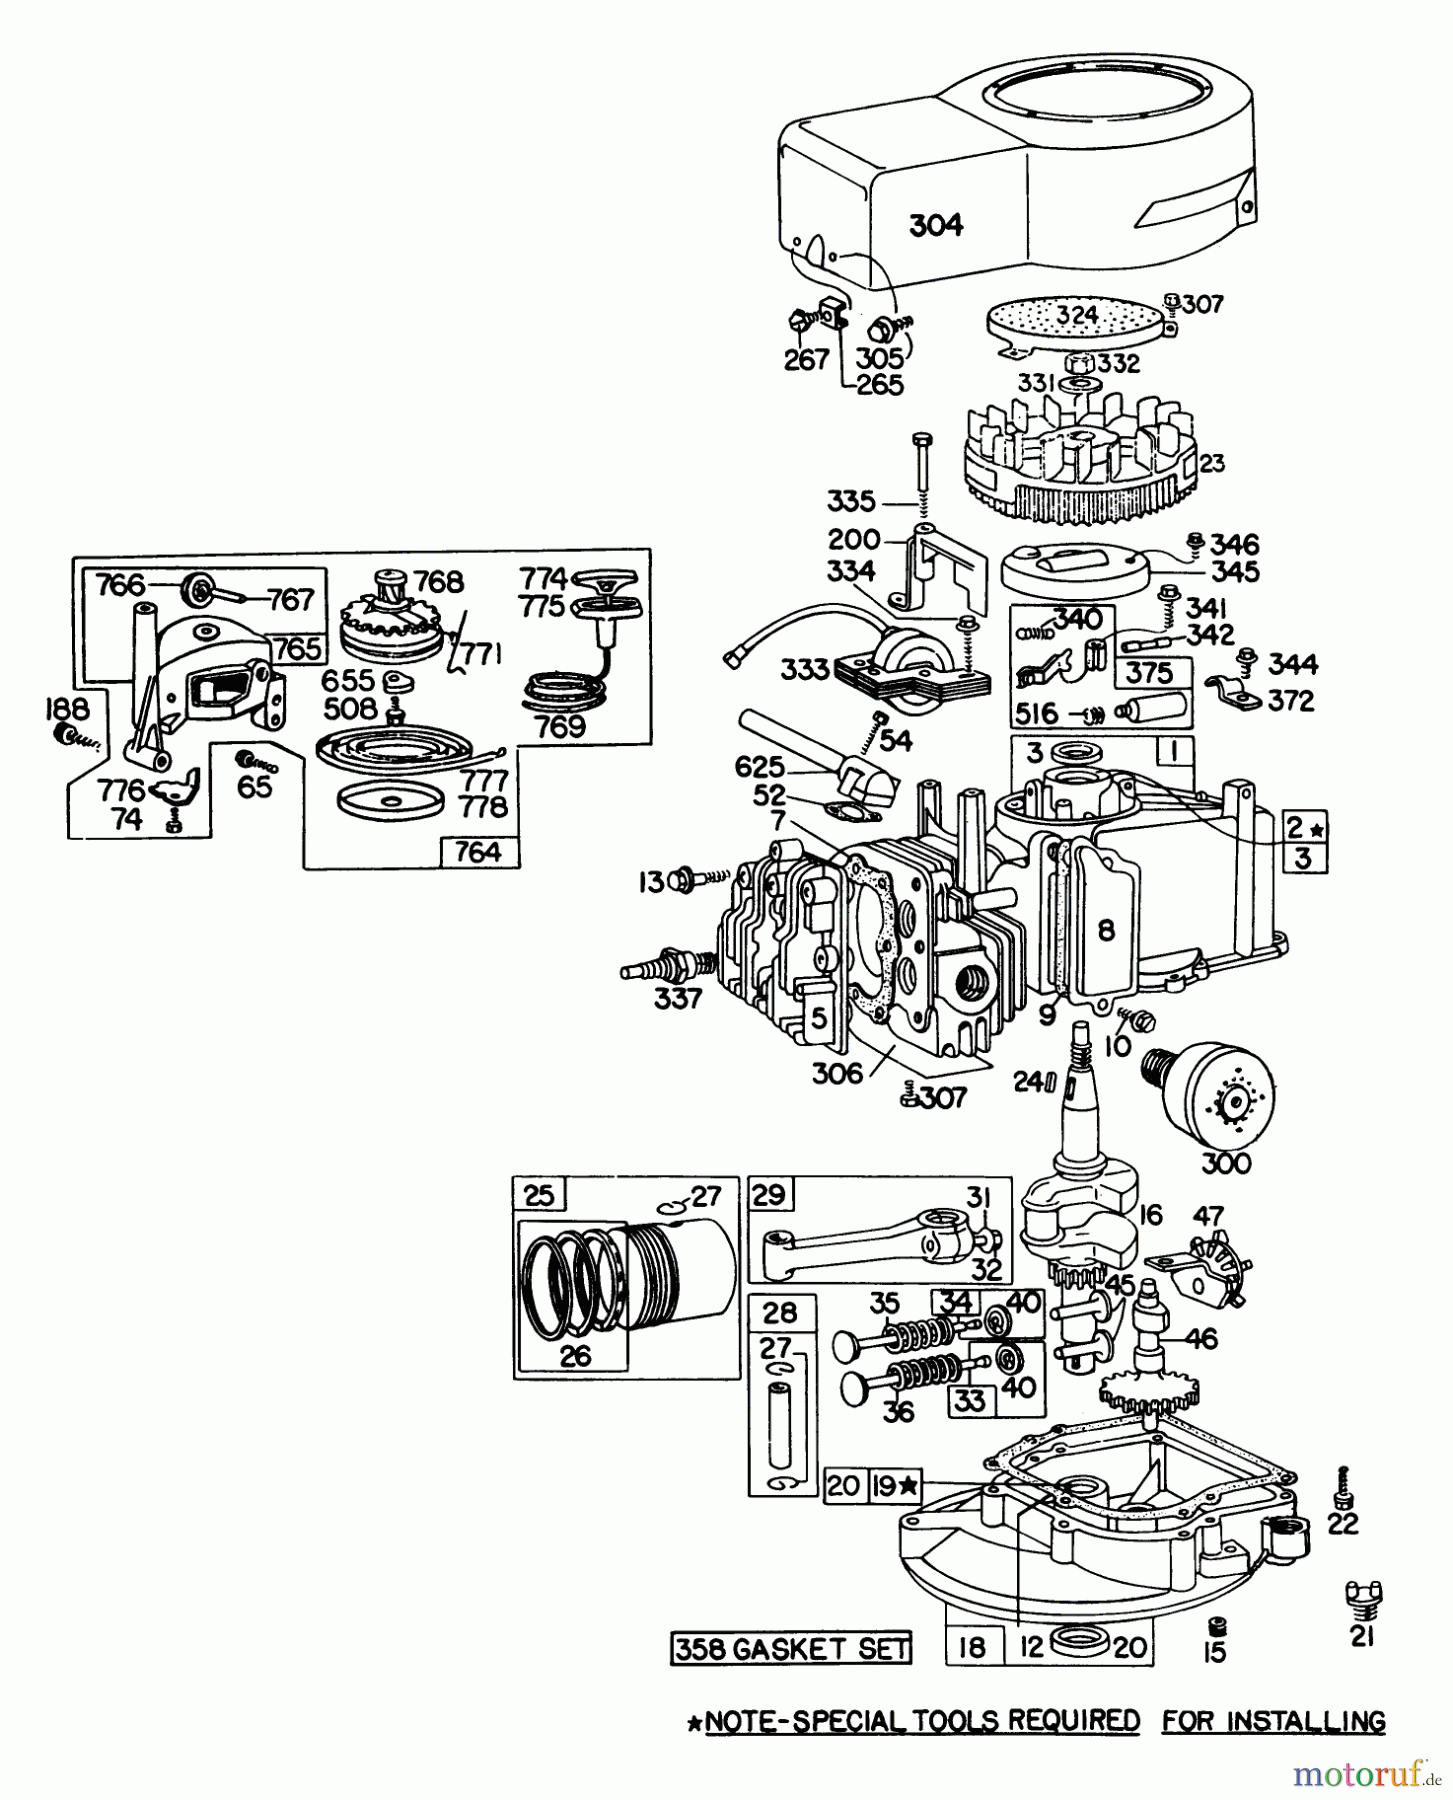  Toro Neu Mowers, Walk-Behind Seite 1 16009 - Toro Whirlwind II Lawnmower, 1978 (8000001-8999999) ENGINE BRIGGS & STRATTON MODEL 92908-1744-01 FOR 21